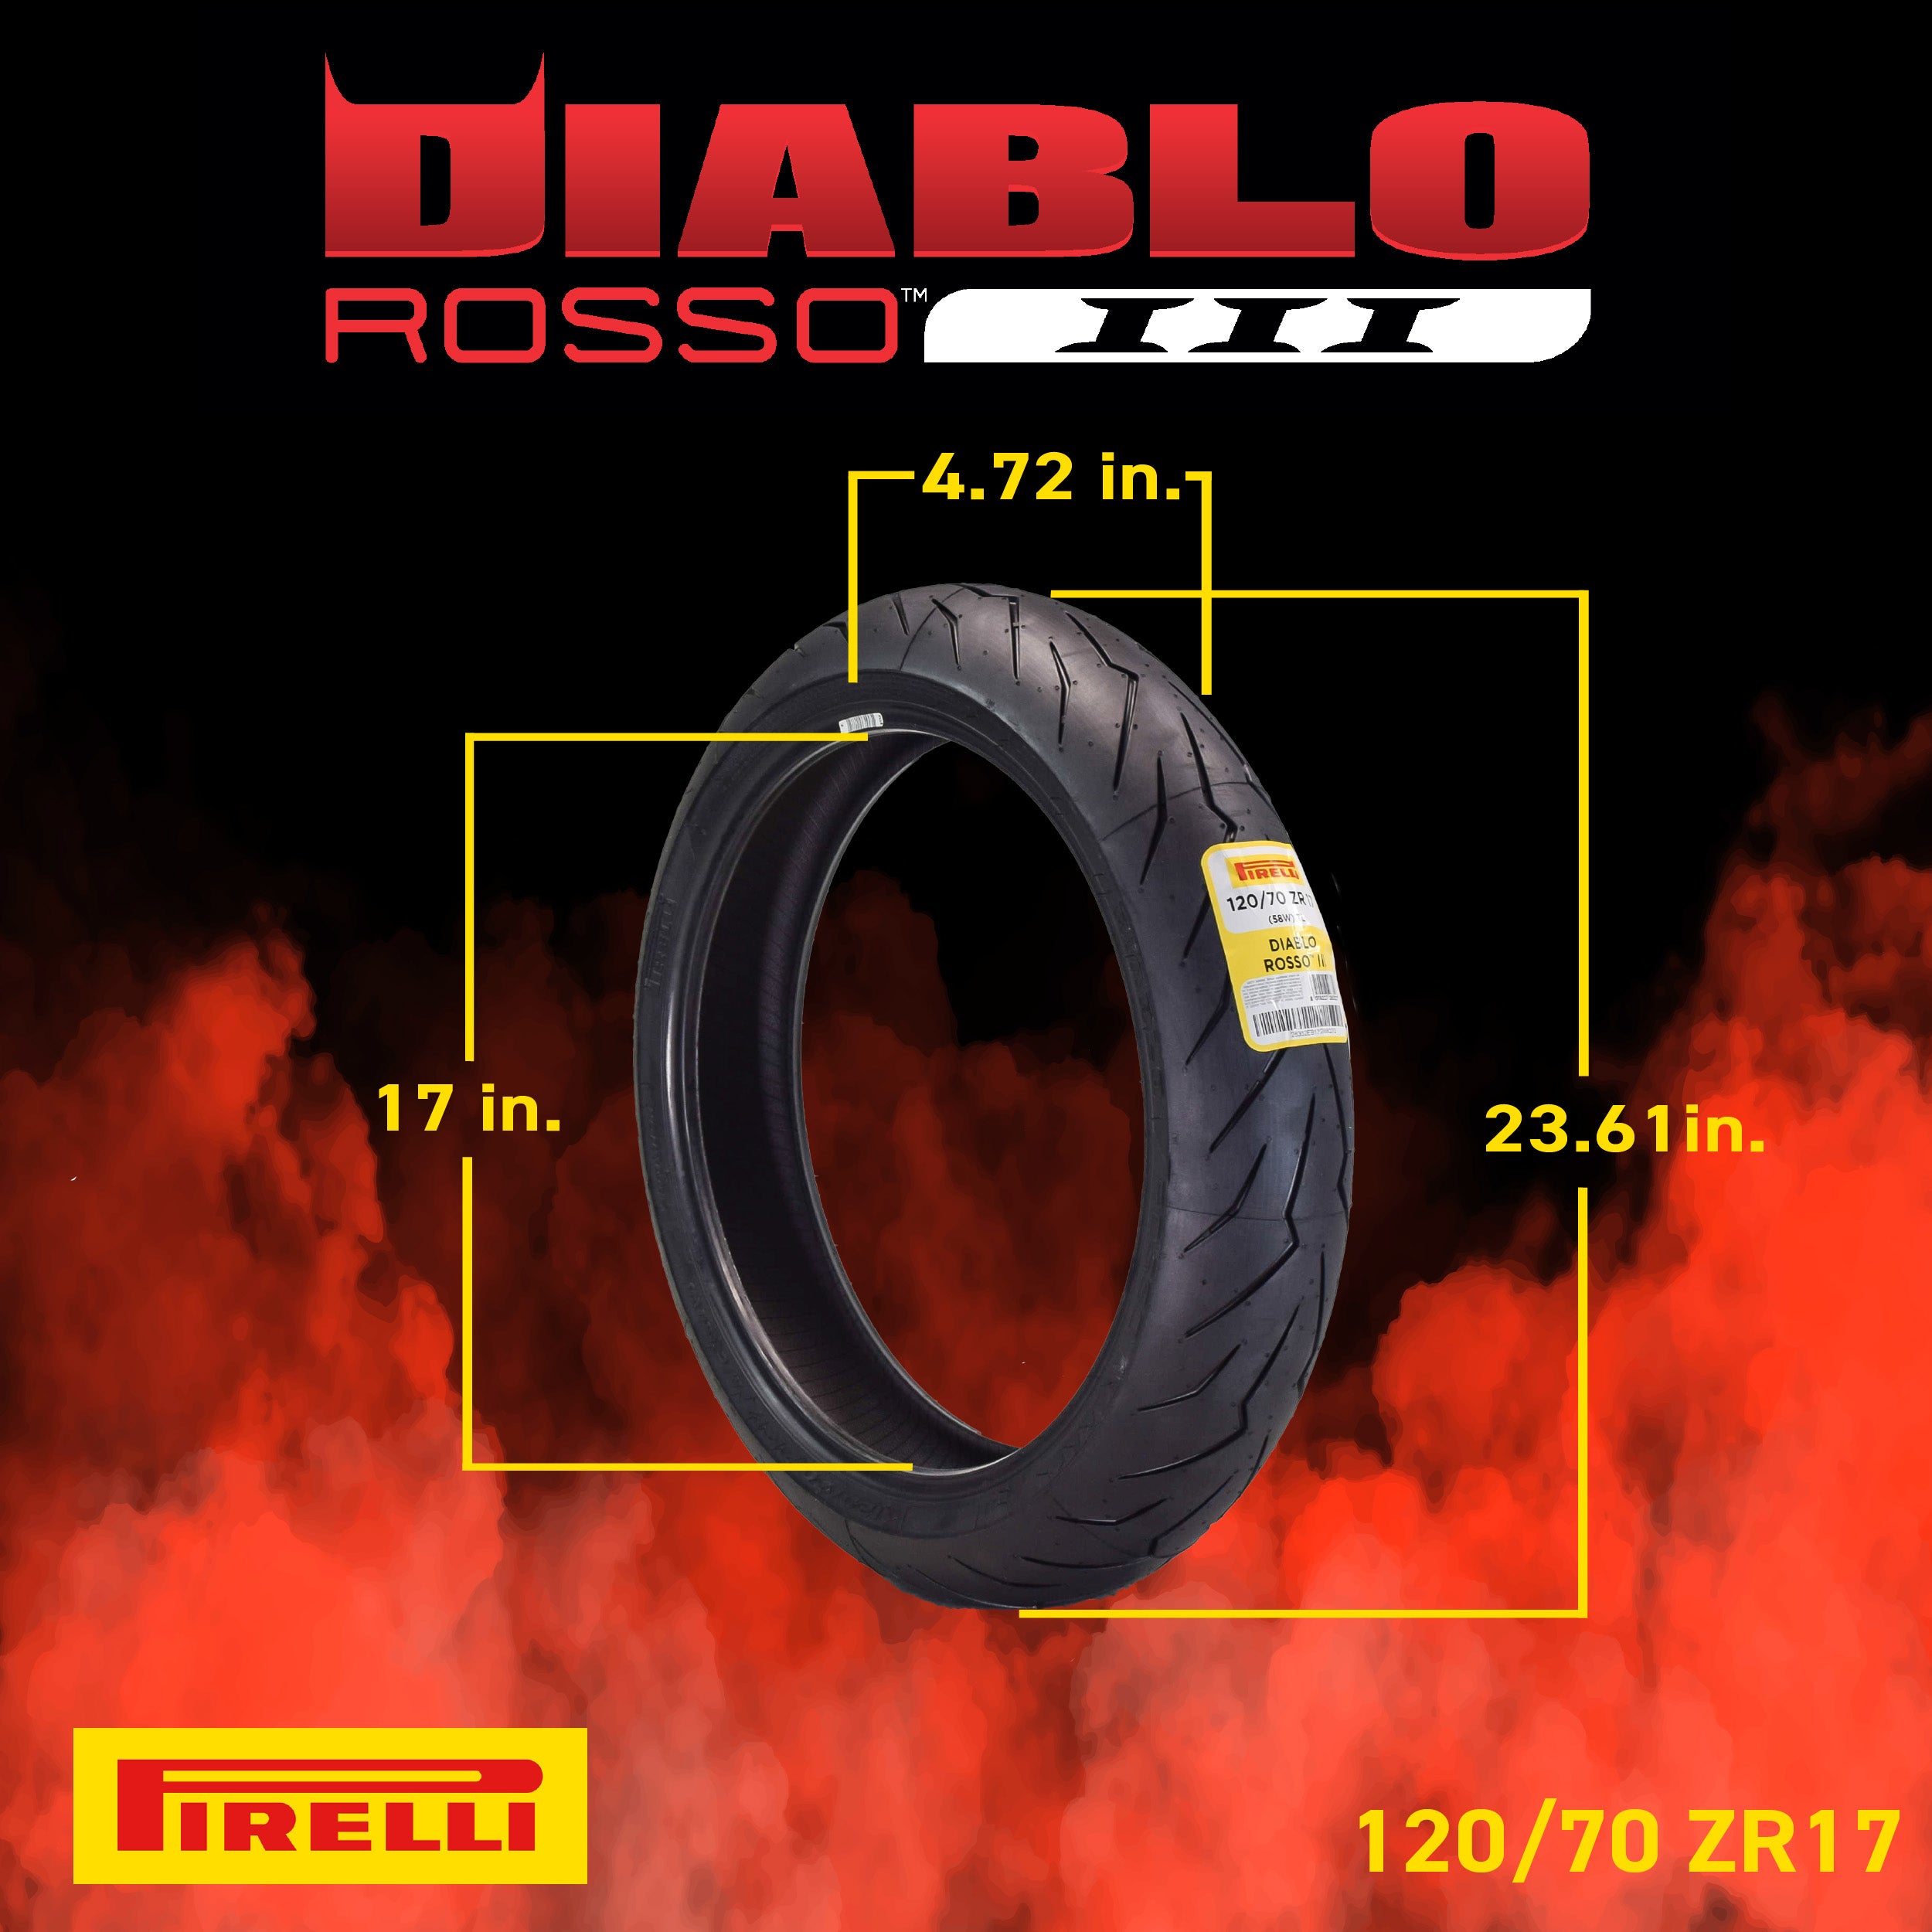 Pirelli Diablo Rosso III 120/70ZR17 190/50ZR17 Front & Rear Motorcycle Tire Set